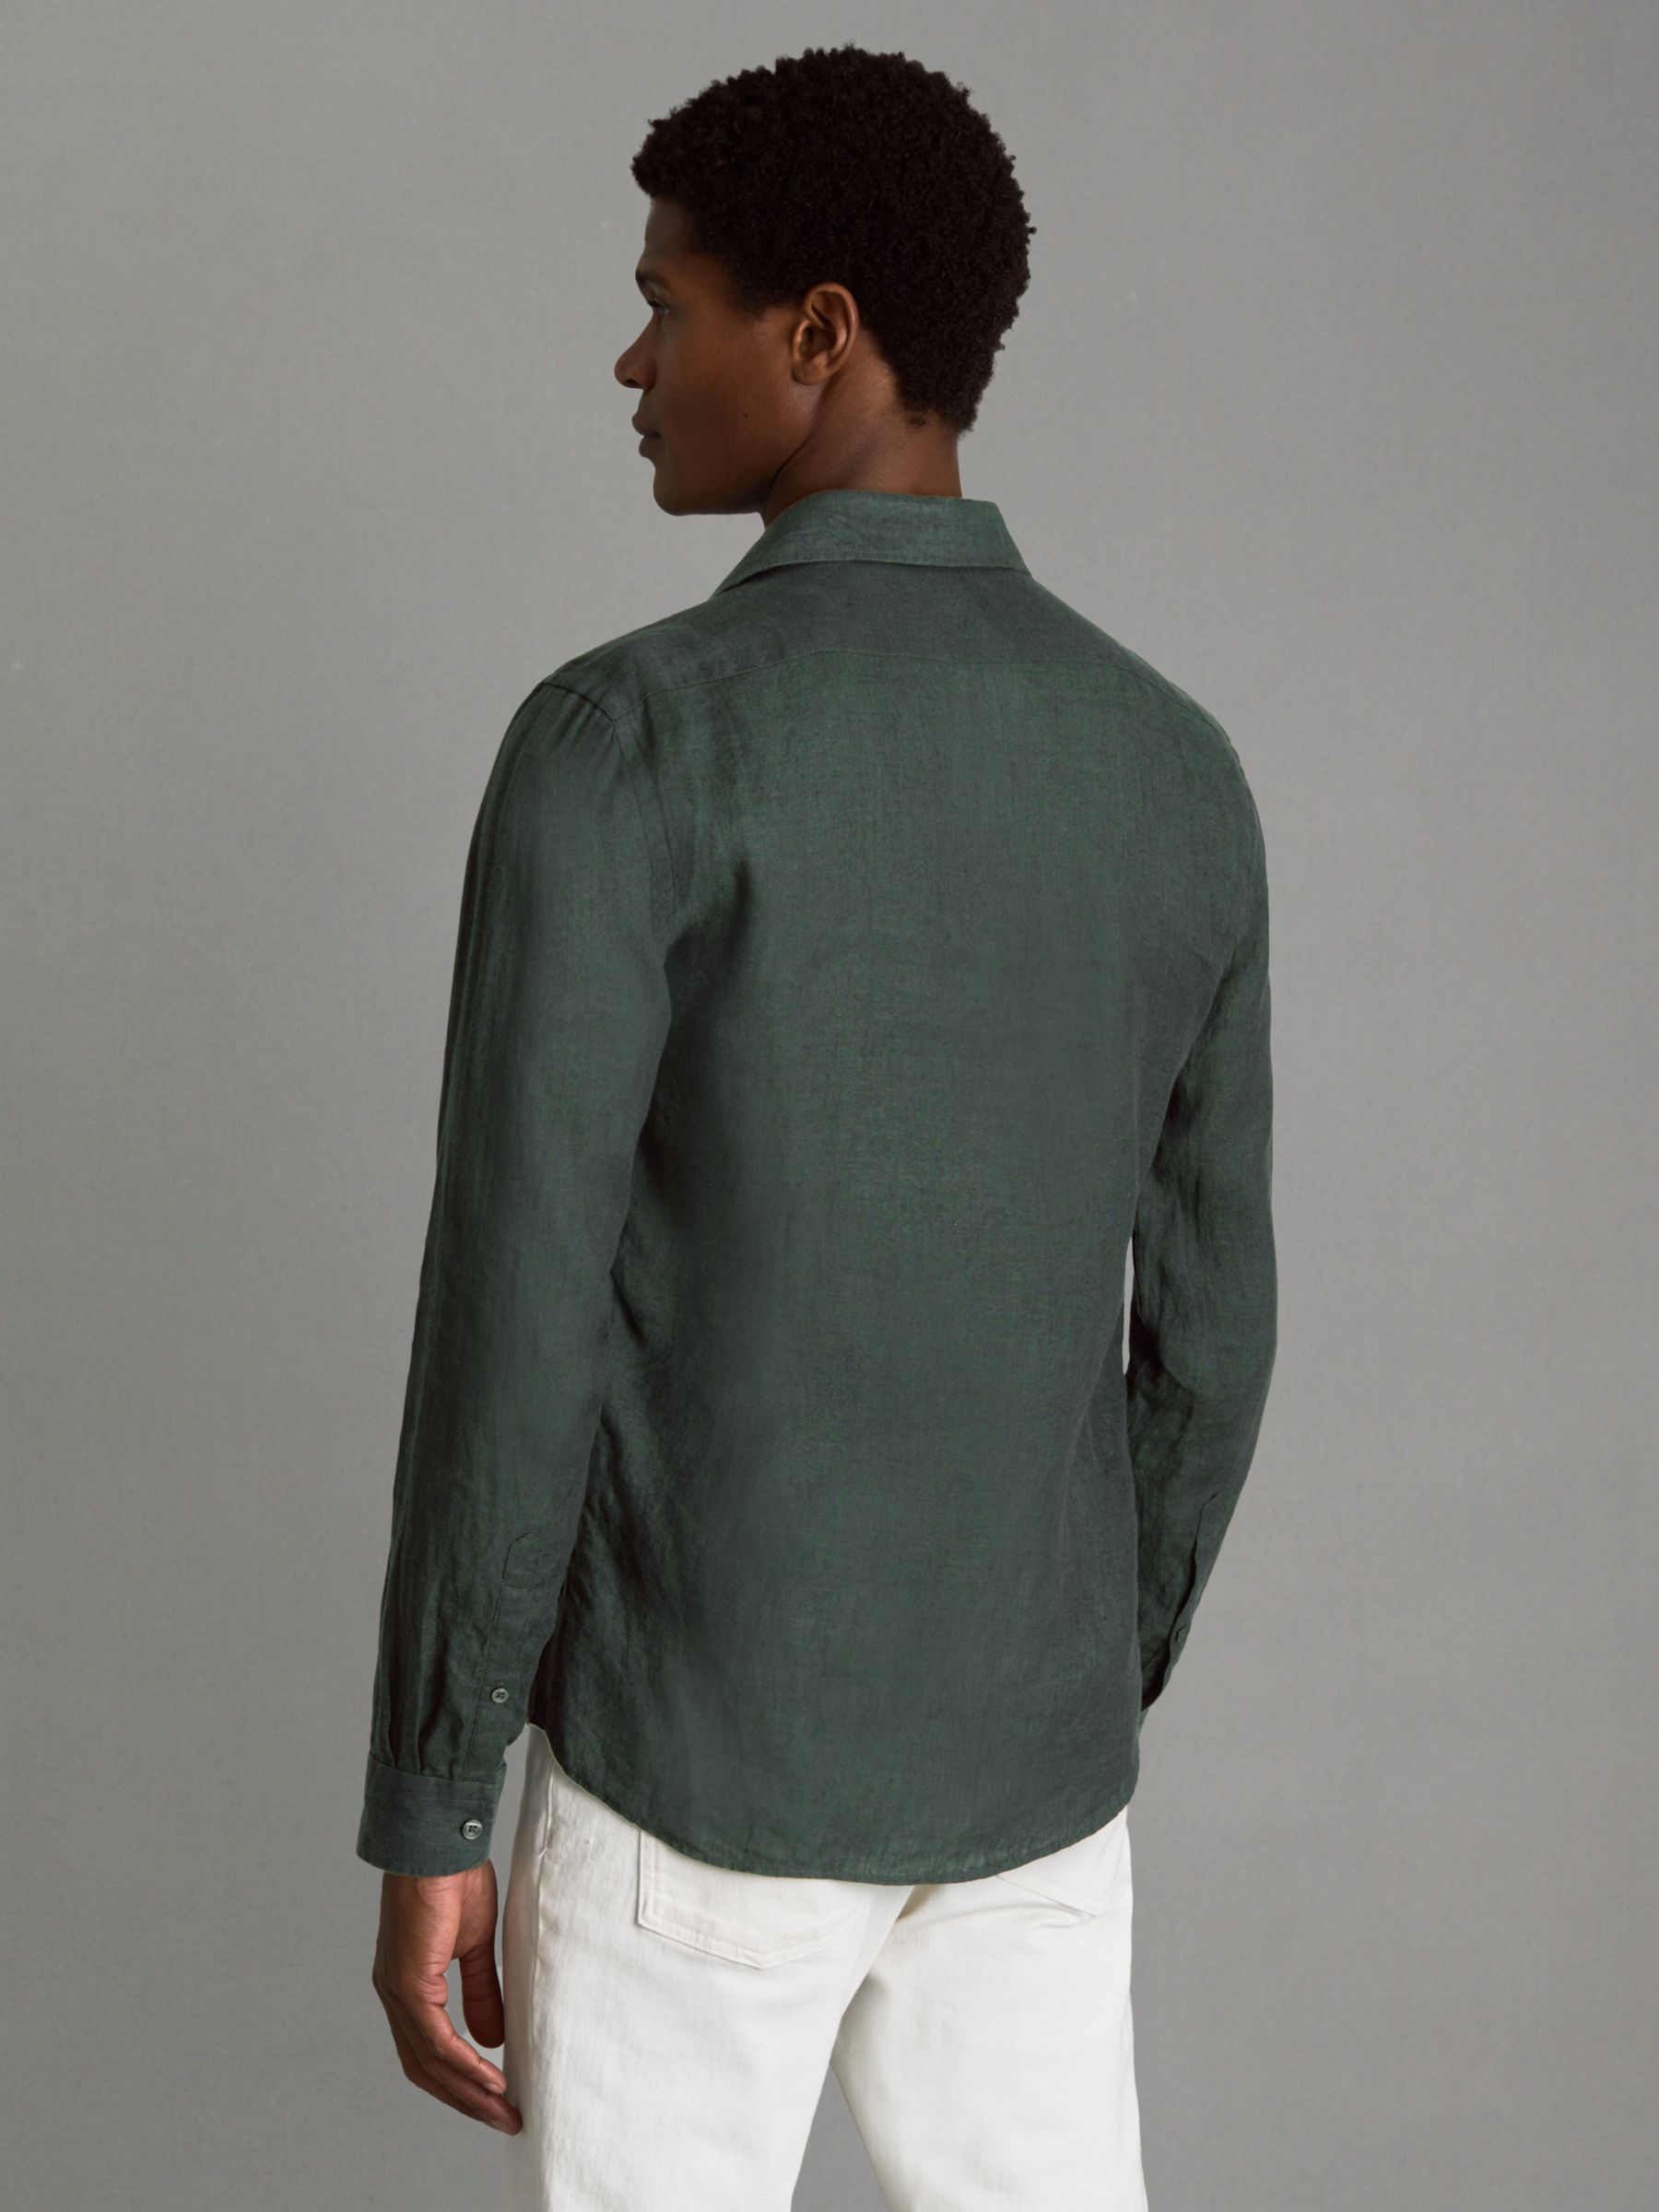 Reiss Ruban Regular Fit Linen Shirt, Dark Green, XS